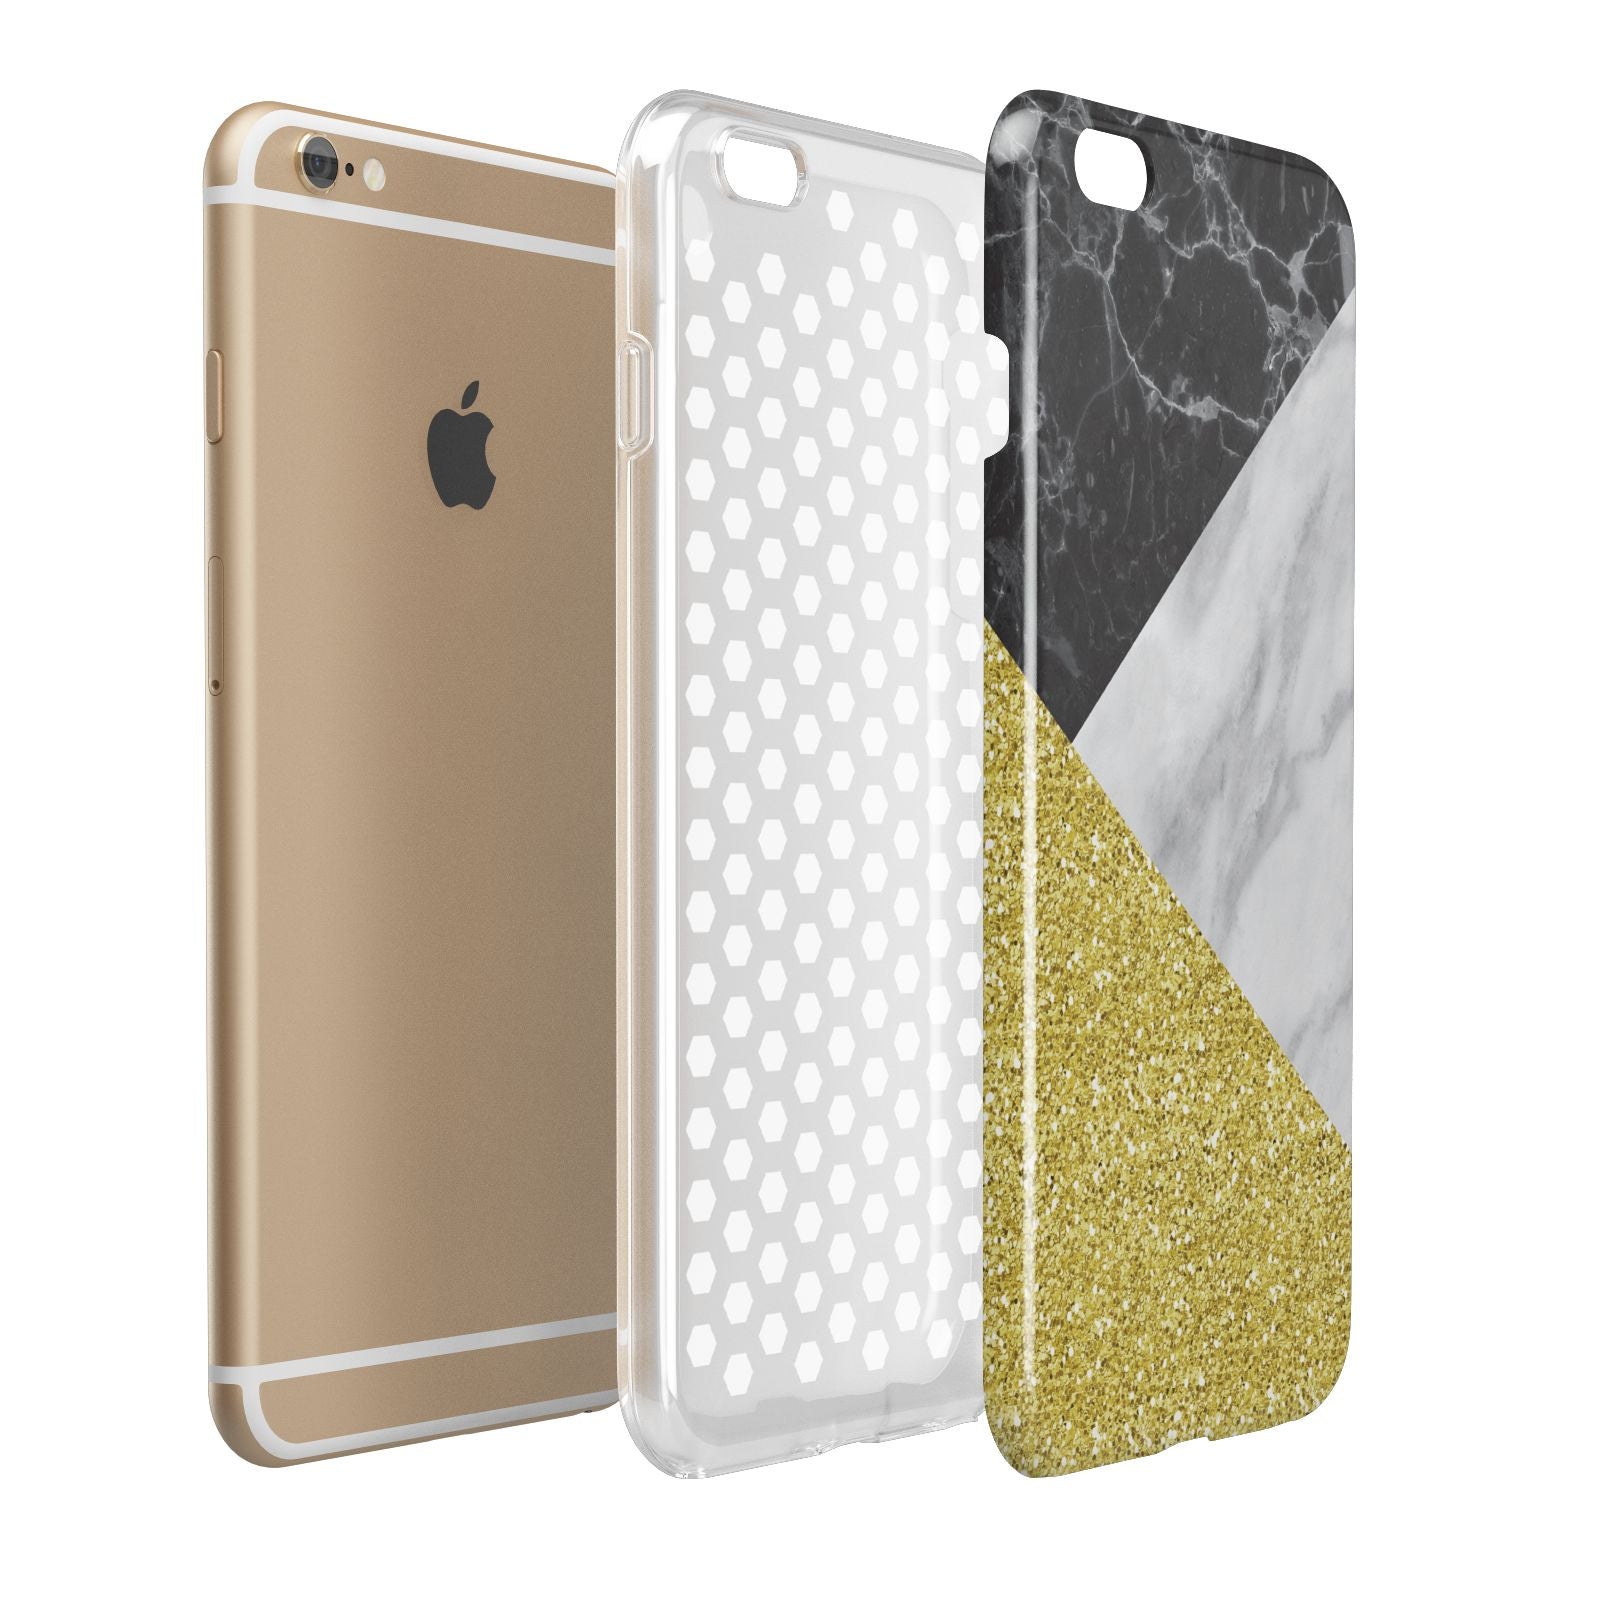 Marble Black Gold Apple iPhone 6 Plus 3D Tough Case